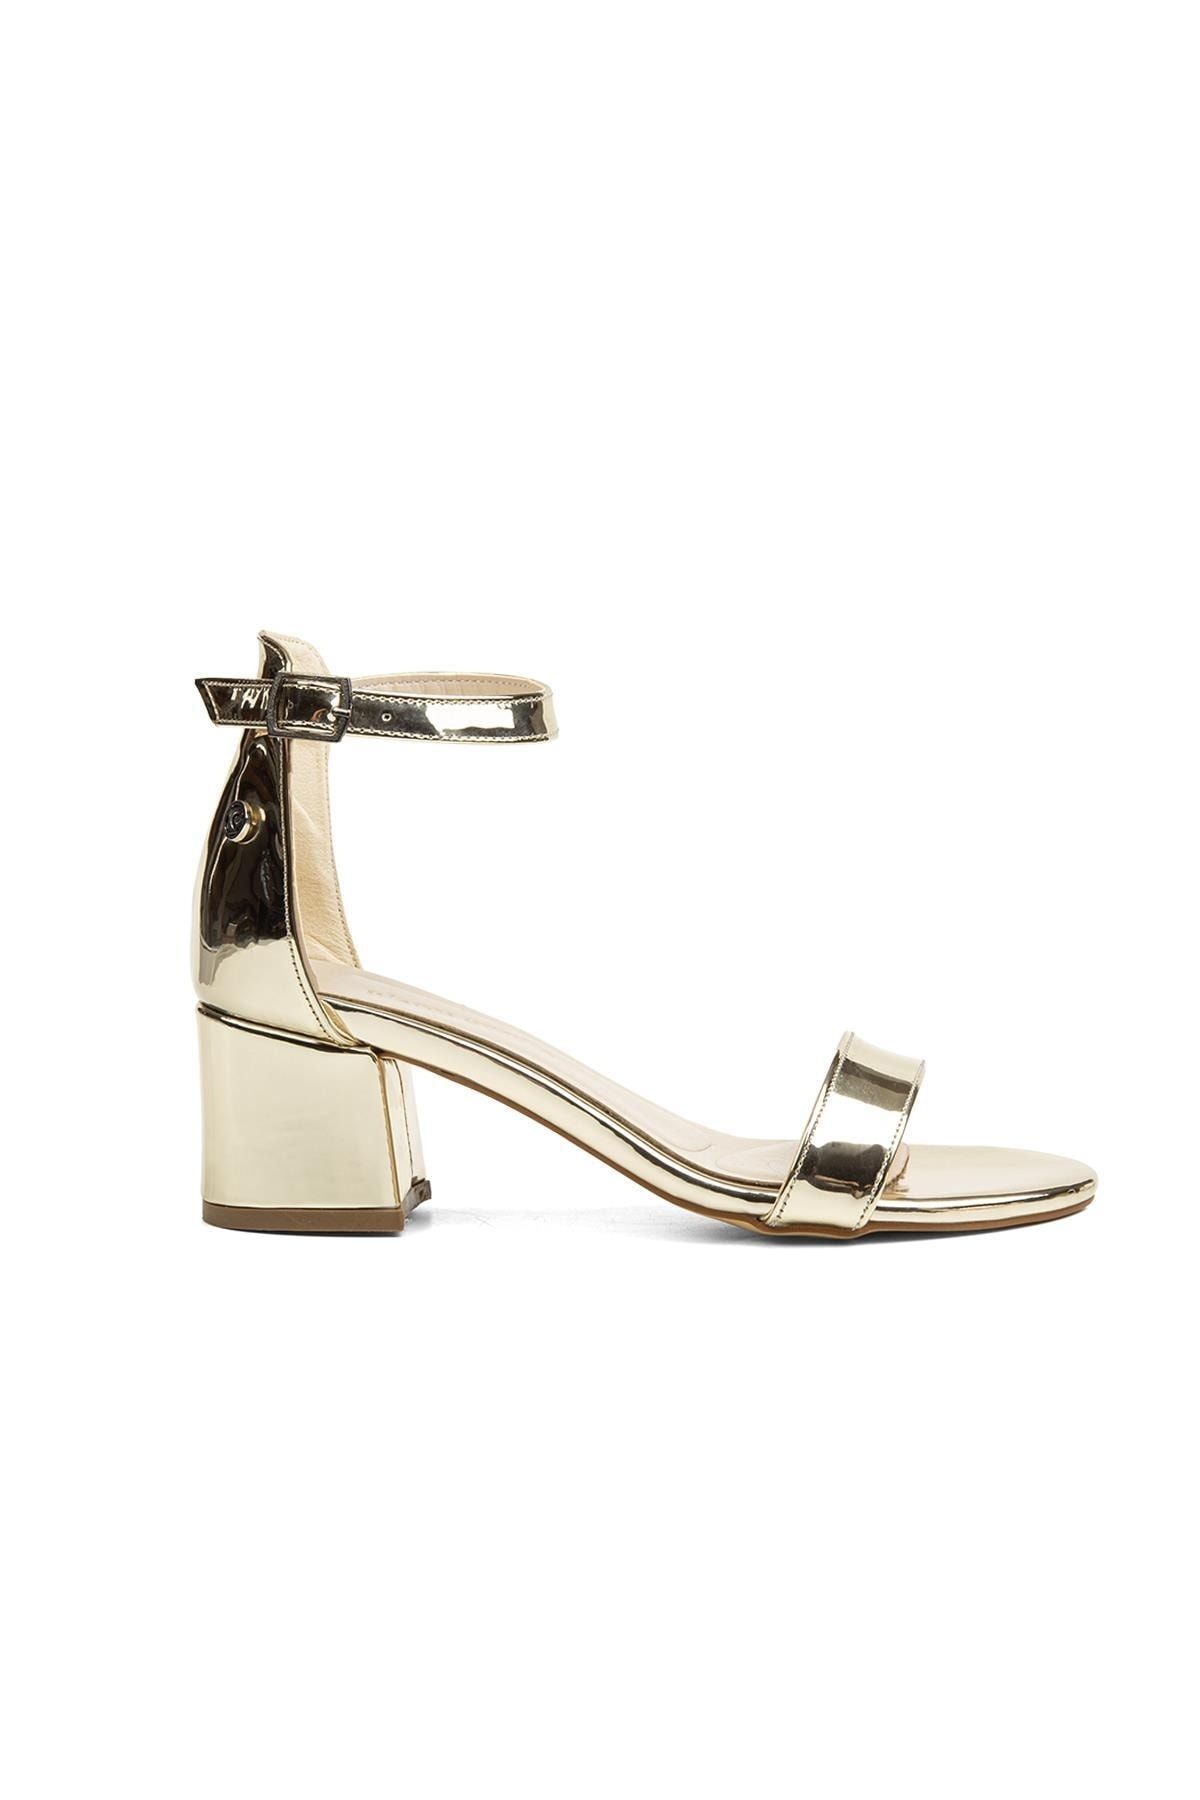 Pierre Cardin ® | Pc-52202-3951 Altın - Kadın Topuklu Ayakkabı